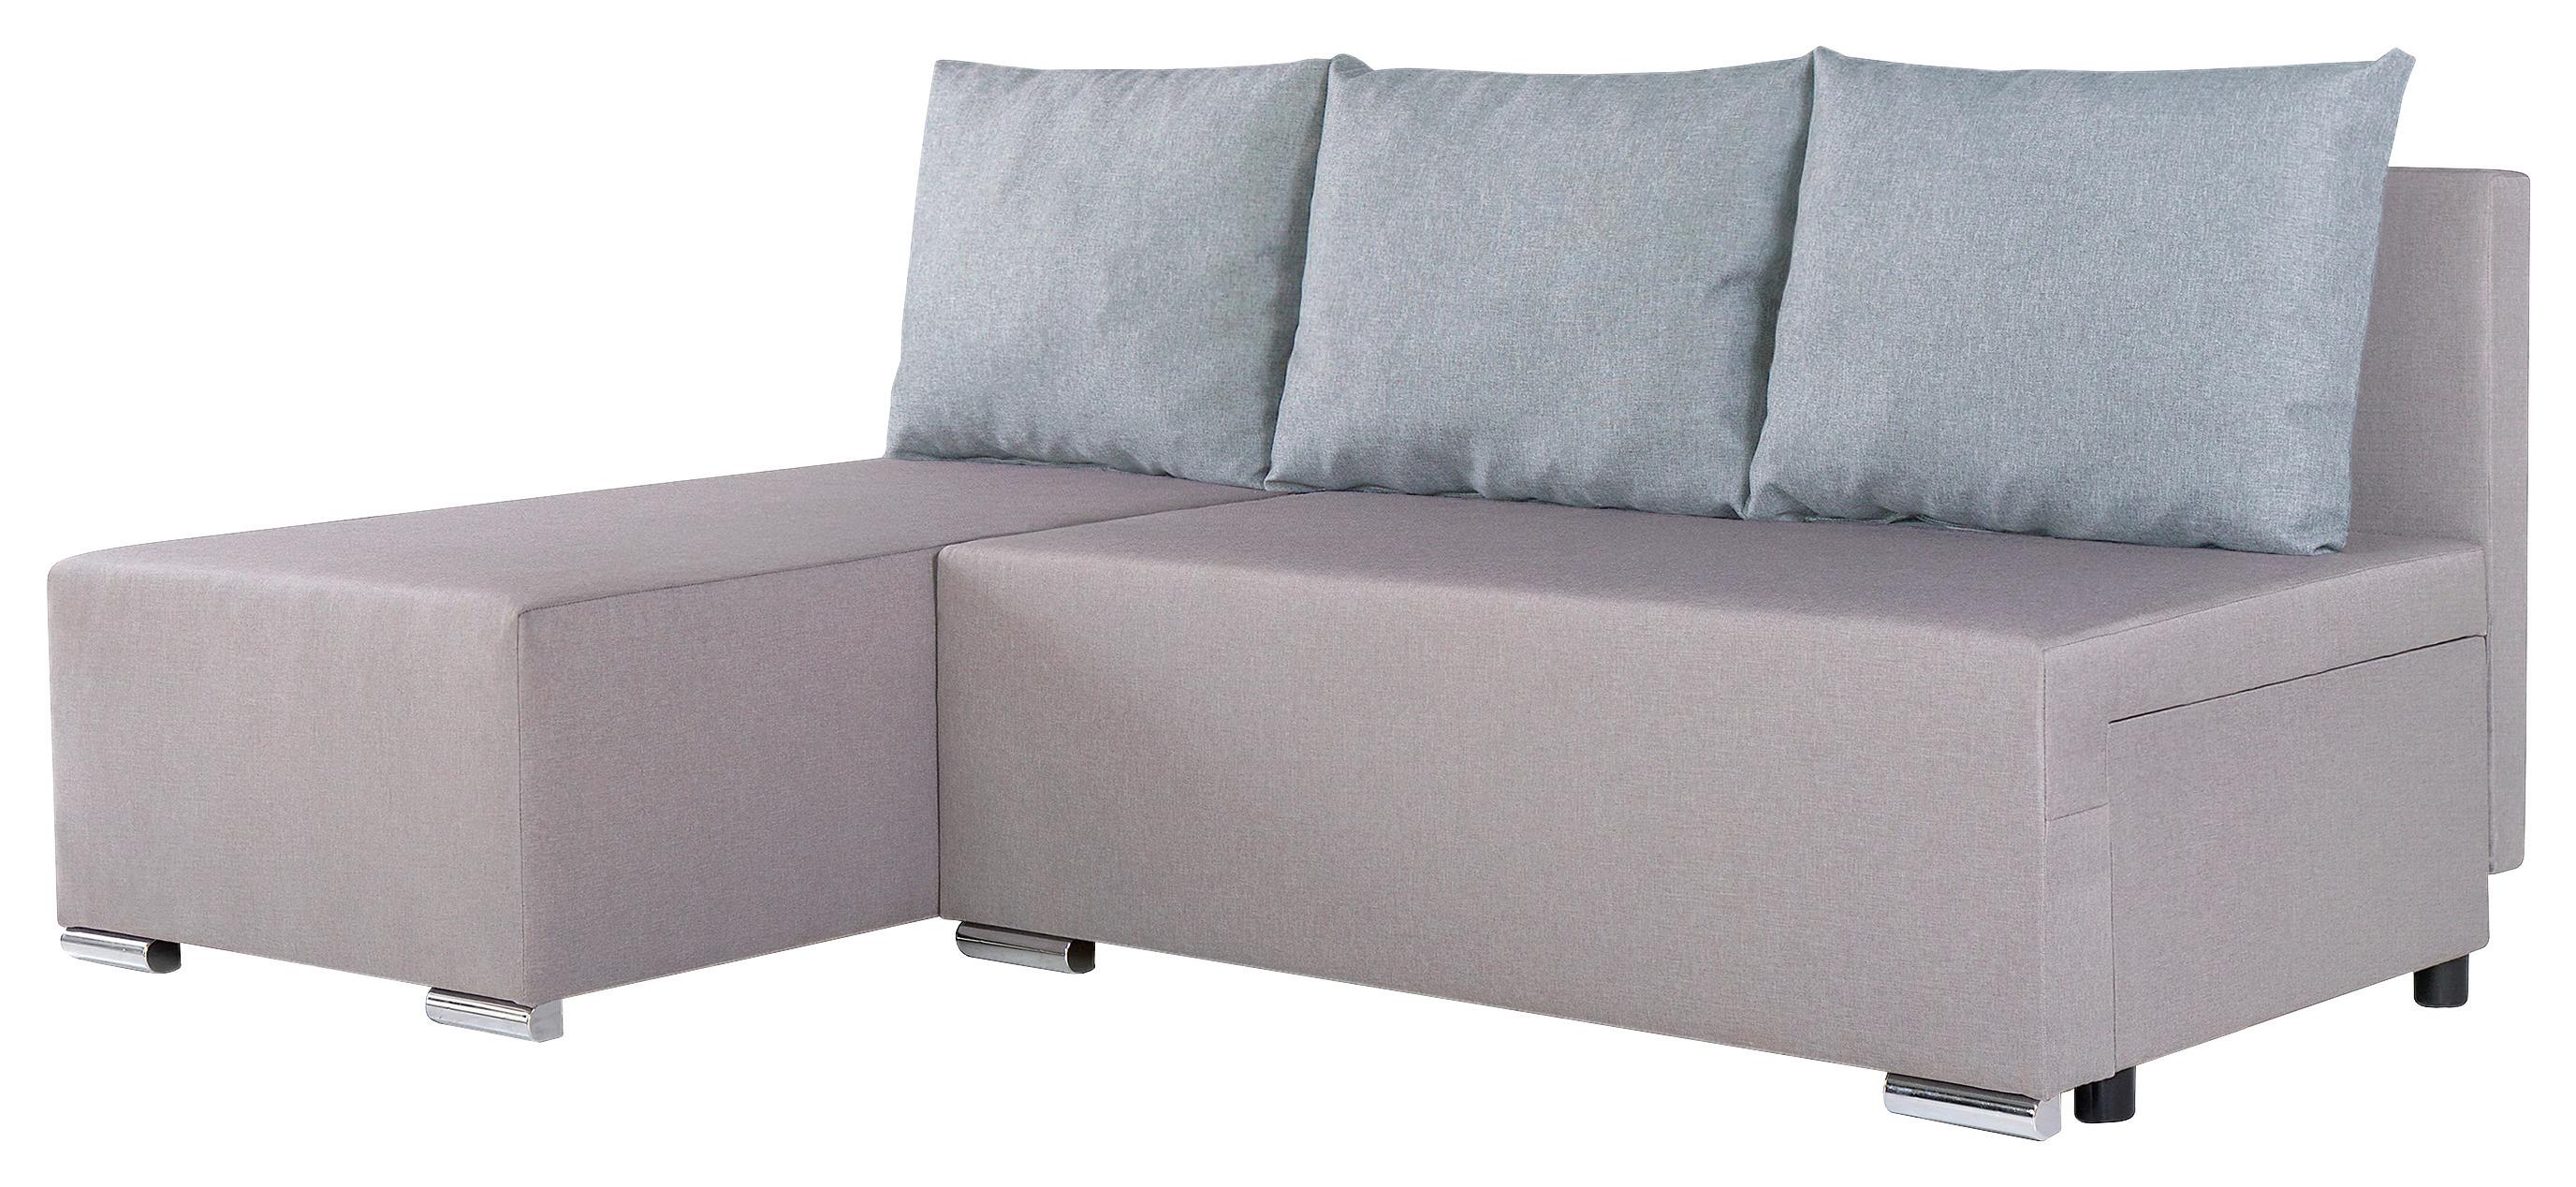 Sedežna Garnitura Lena, Siva, Z Ležiščem In Predalom - srebrne barve/temno siva, Moderno (190/129cm) - Based